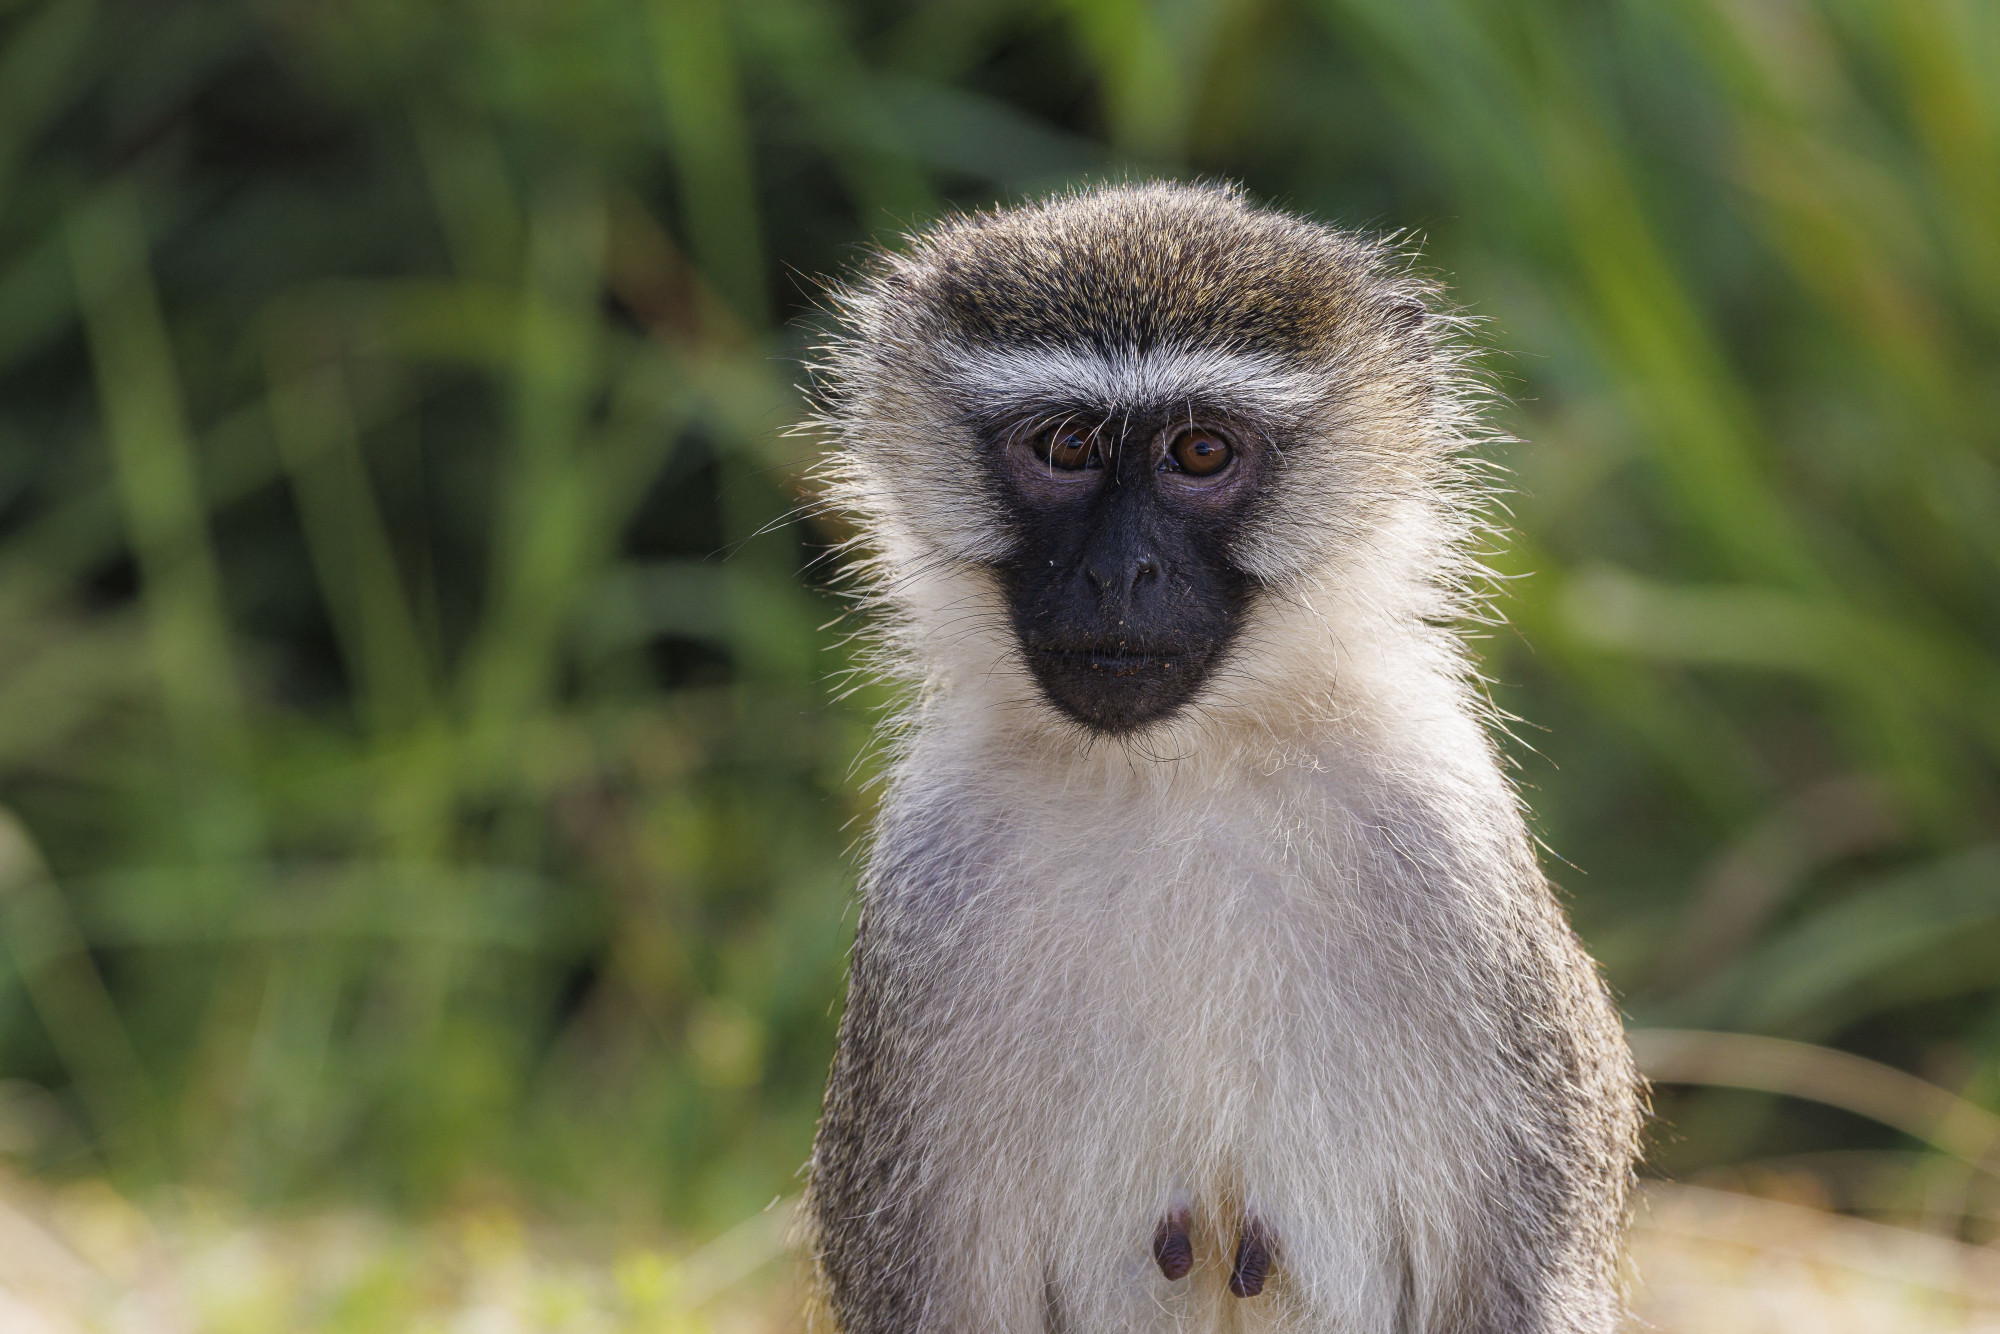 A vervet majmok teljes populációját irtanák ki a Karib-tengeren lévő Szent Márton-szigeten